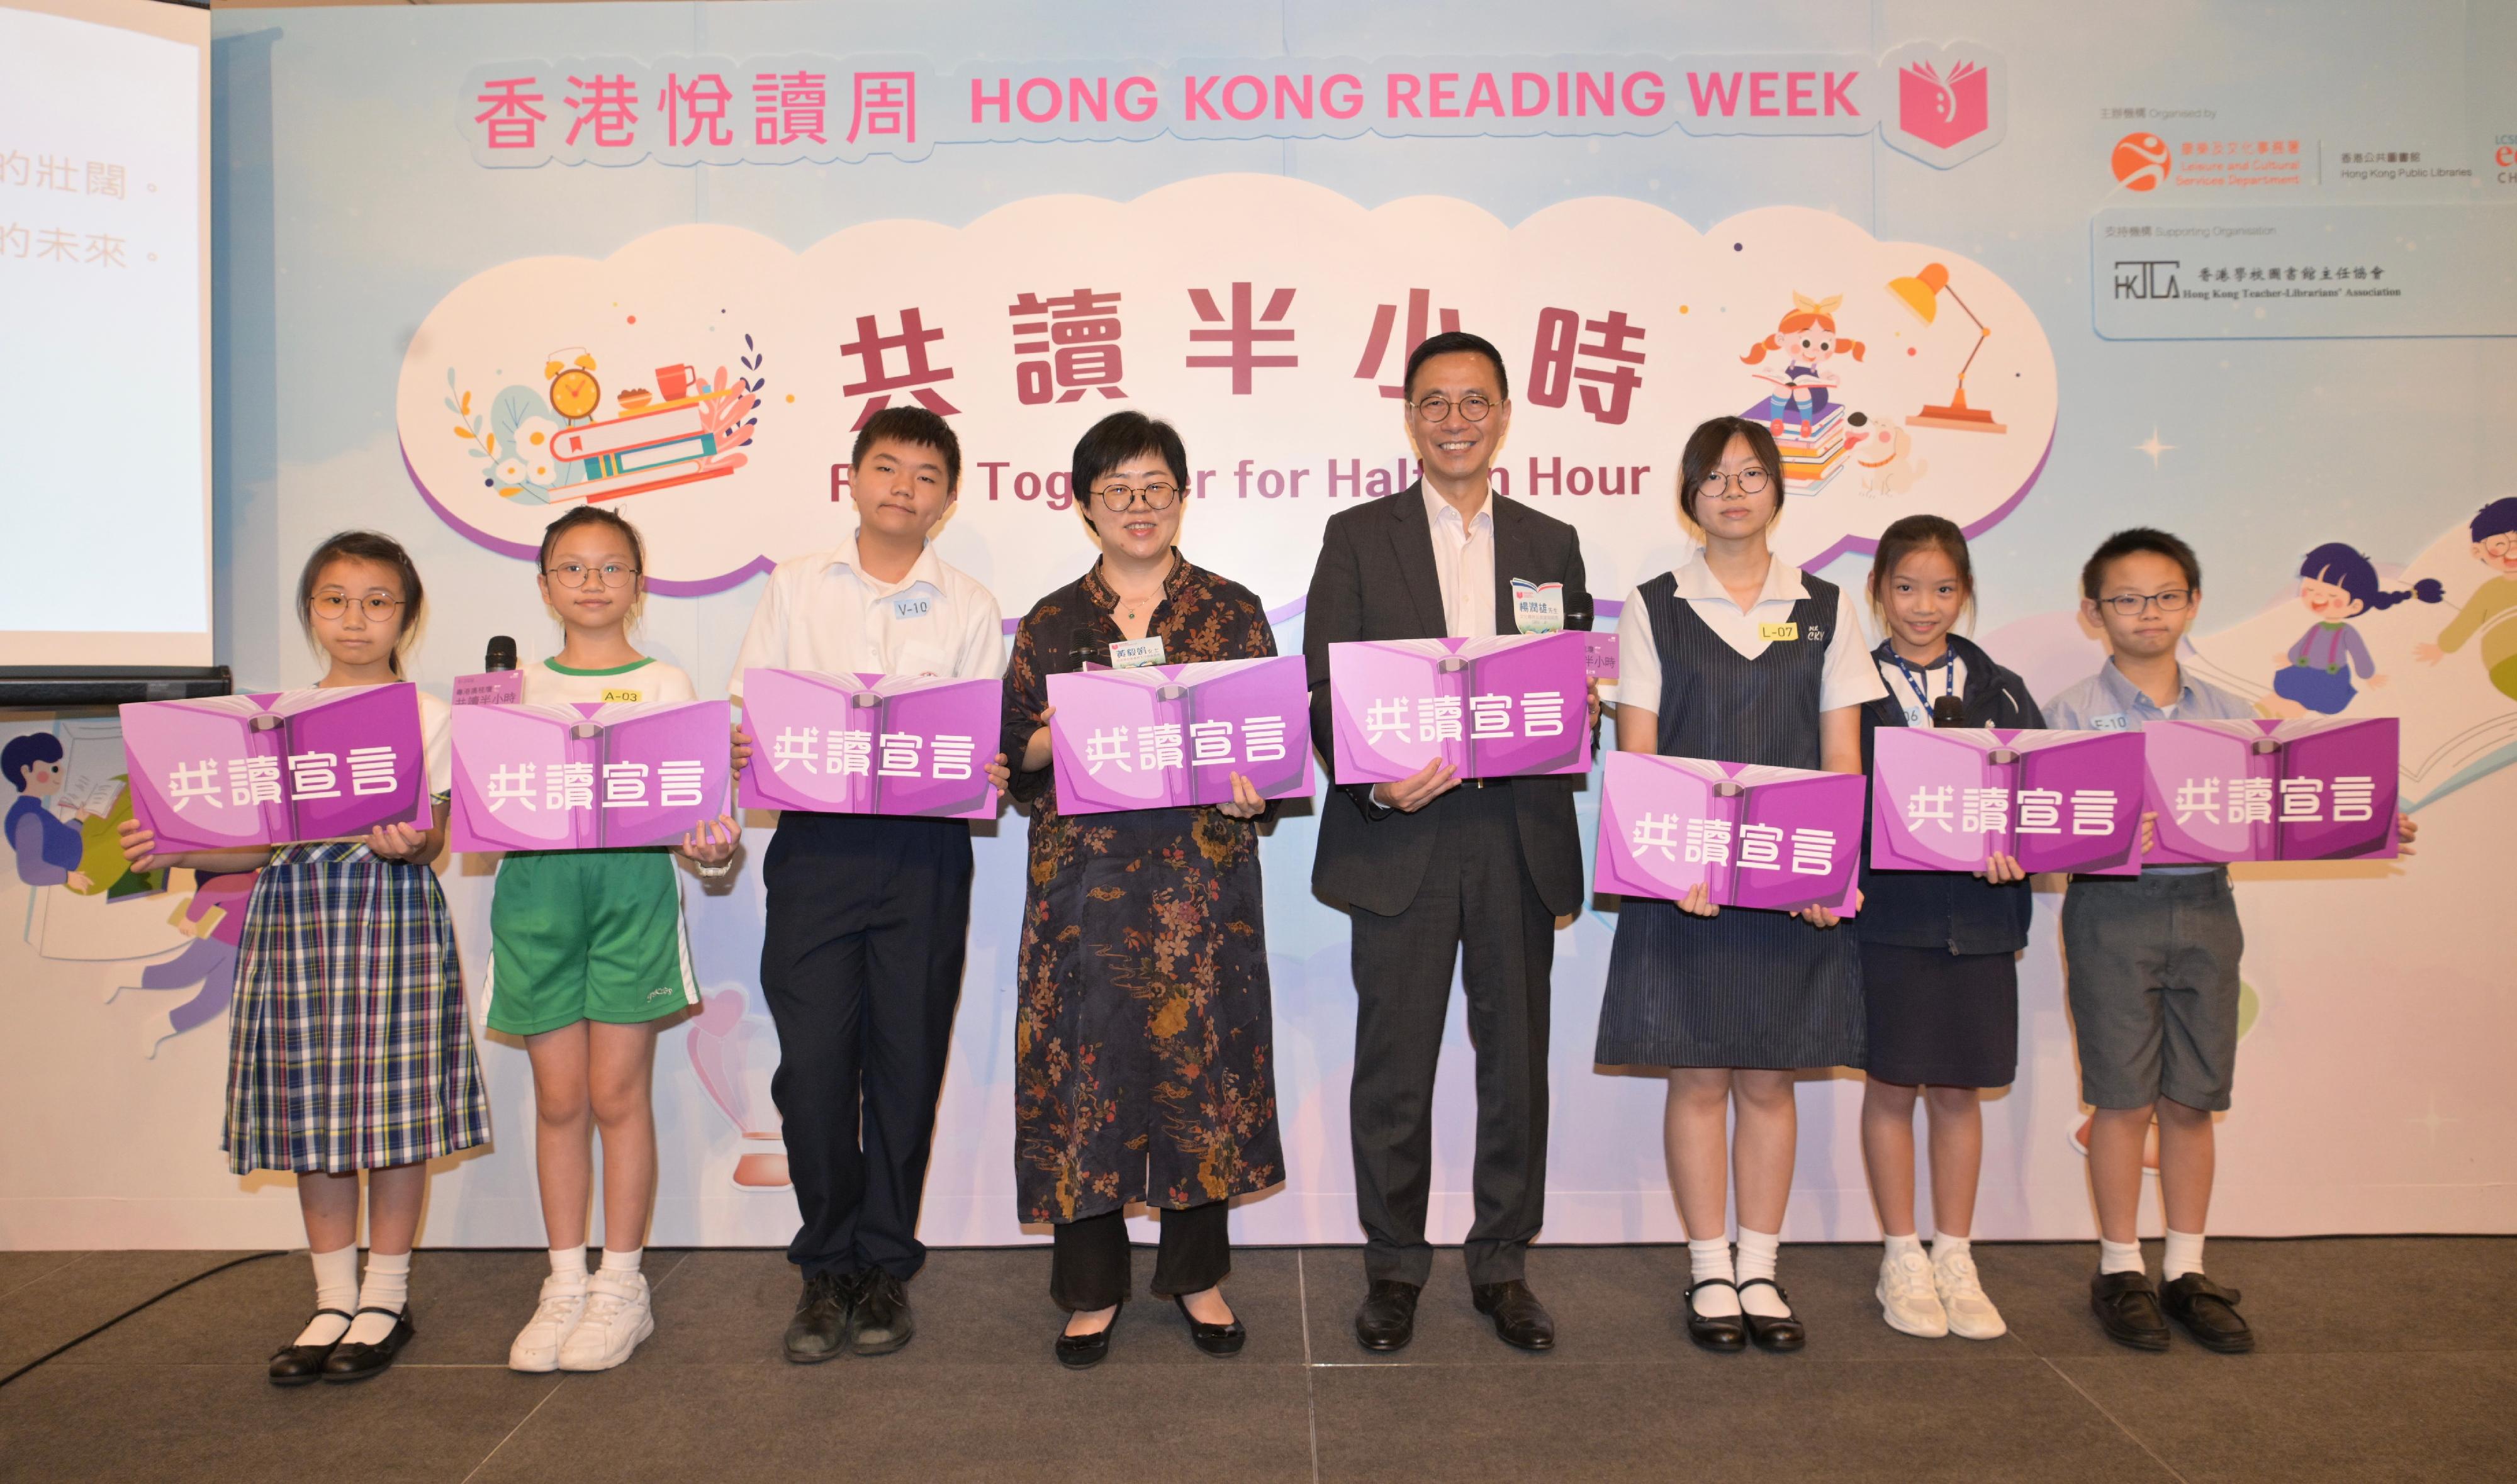 楊潤雄（右四）與香港學校圖書館主任協會會長黃毅娟（左四）和學生一同朗讀「共讀宣言」後合照。